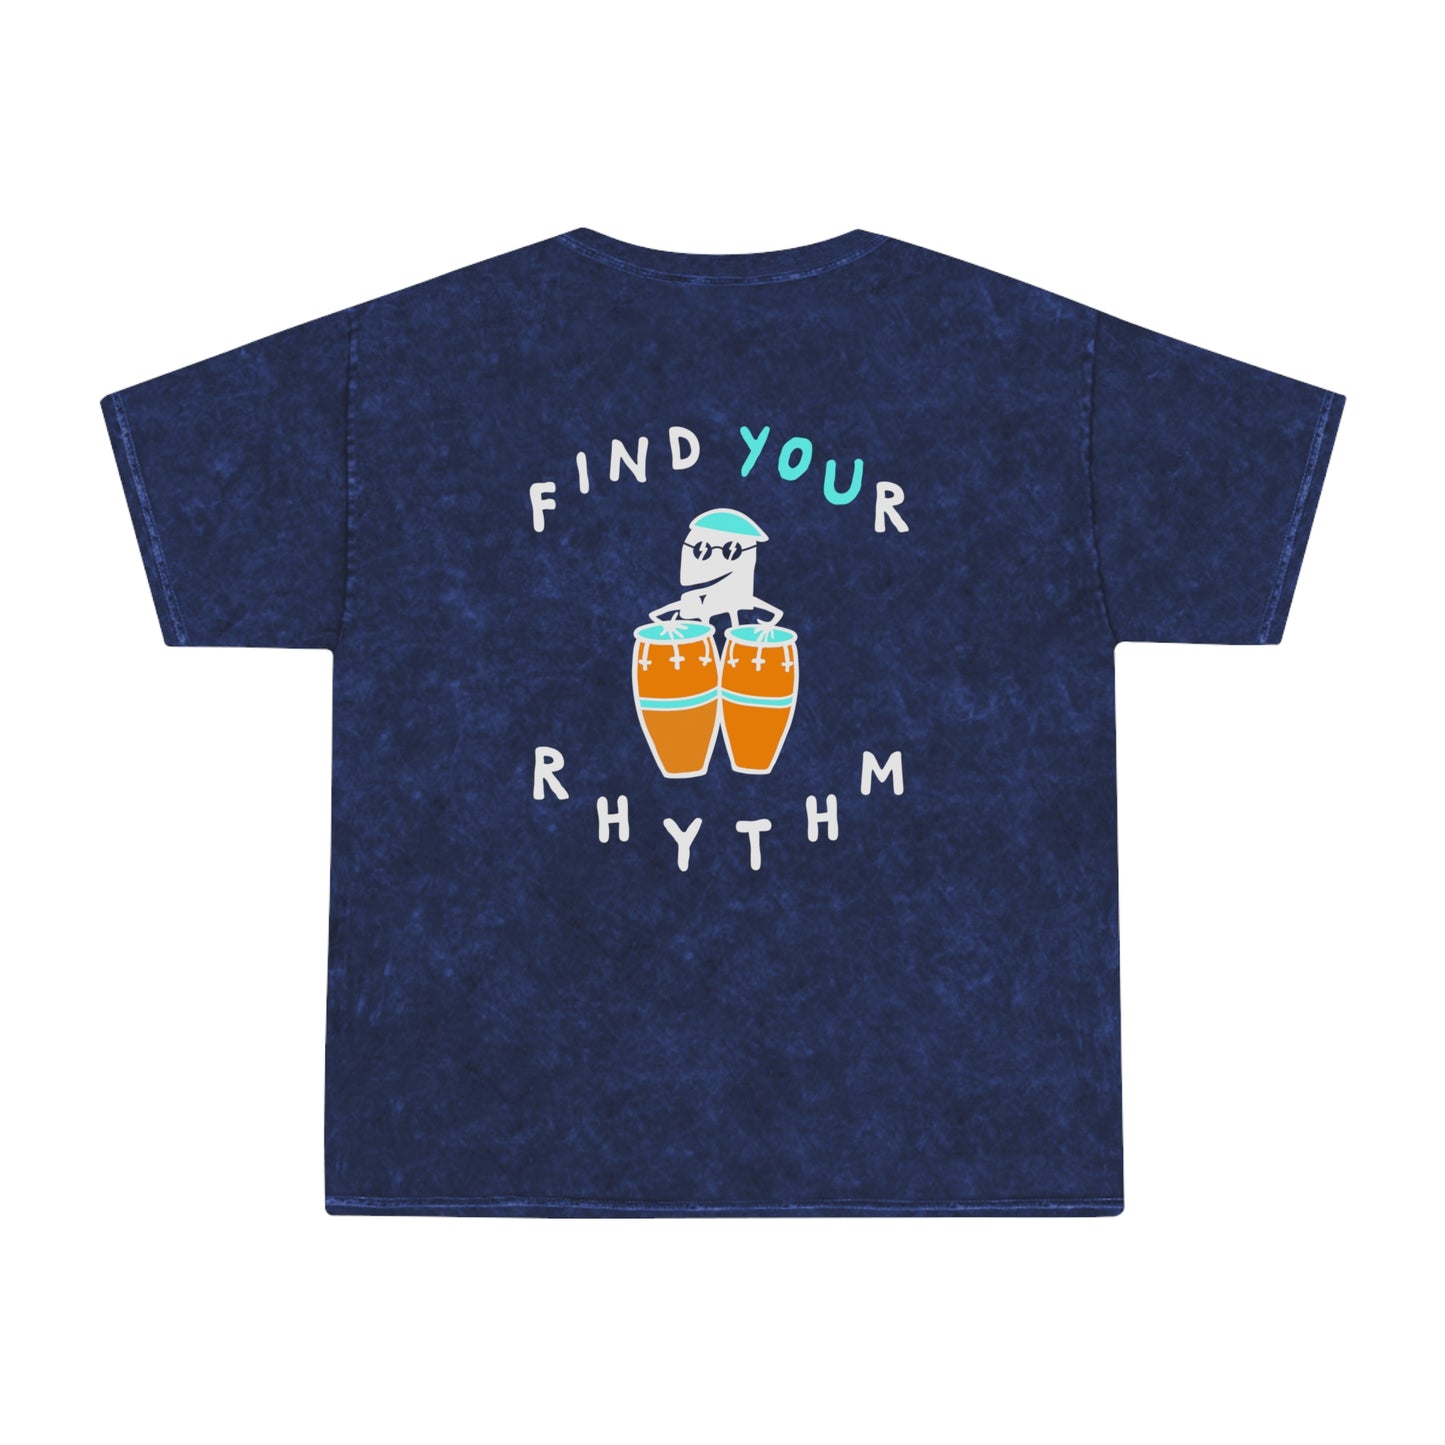 Find Your Rhythm Tee